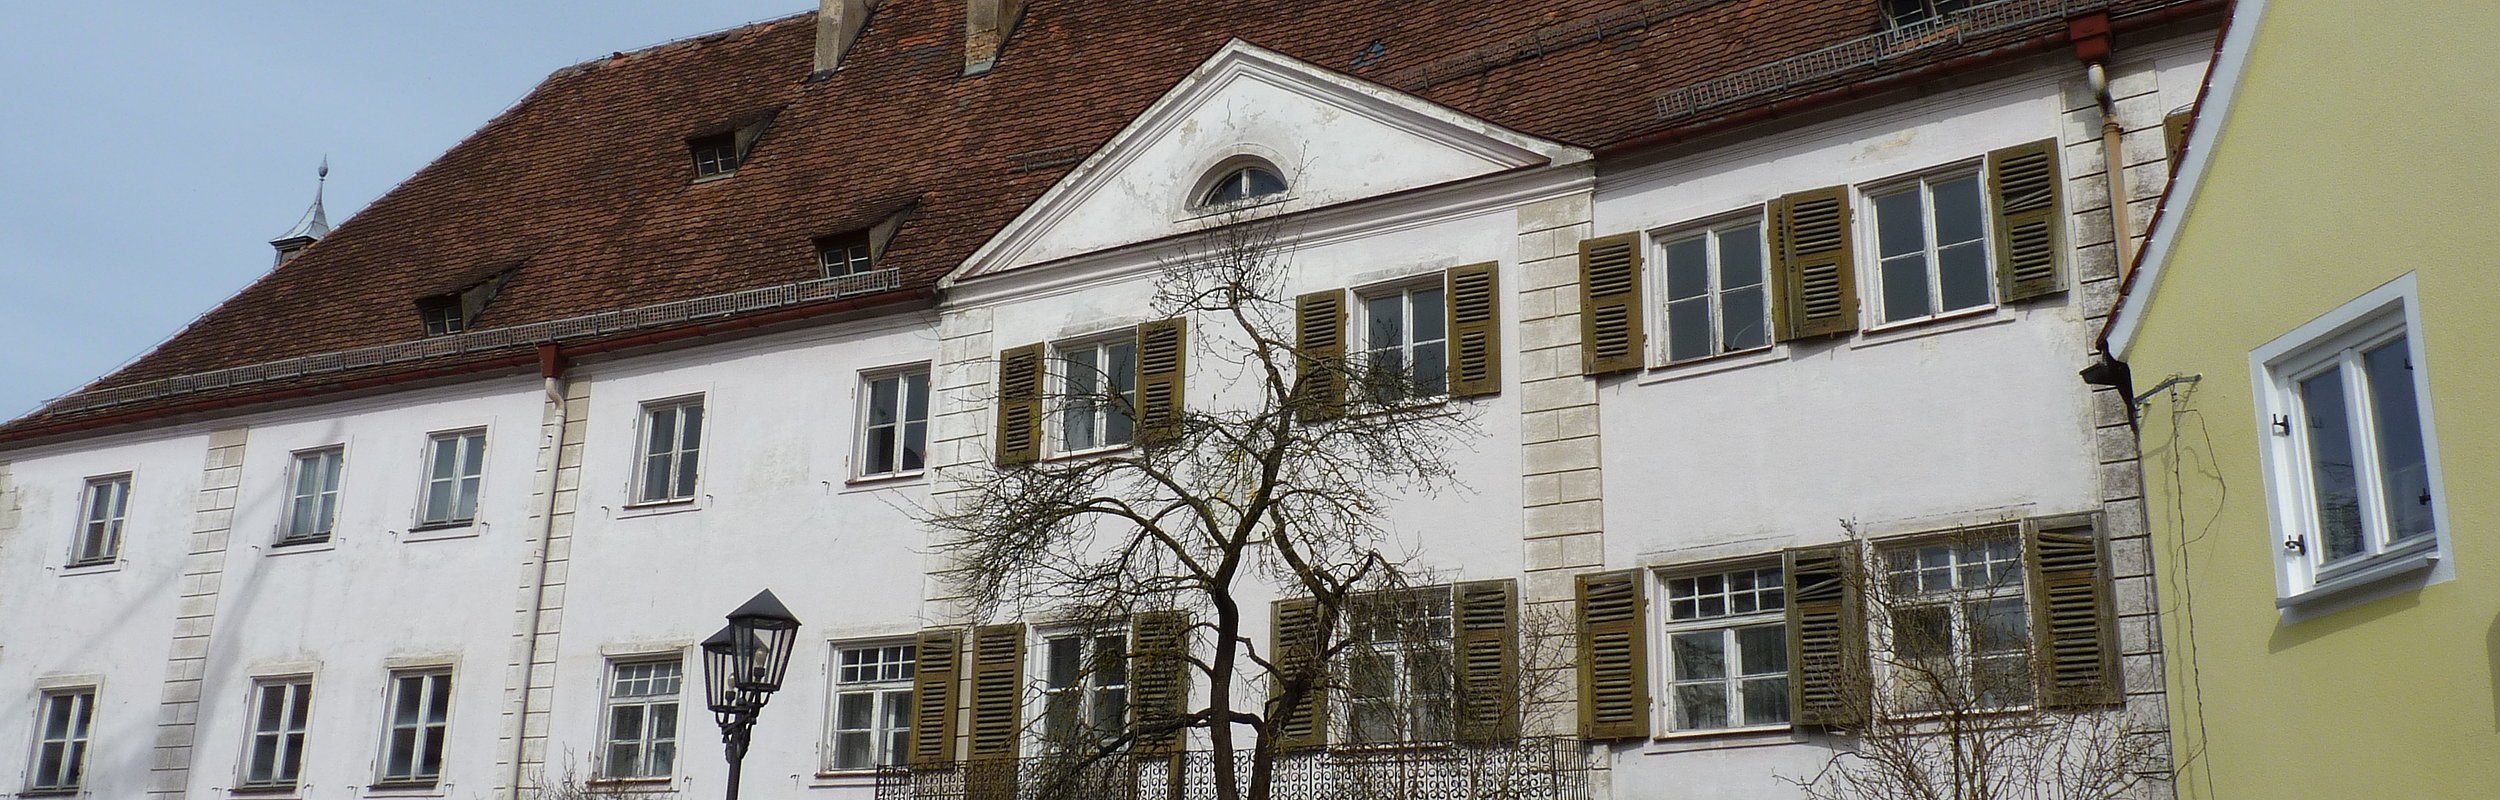 Ehemaliges Schloss / Amtsgericht Monheim